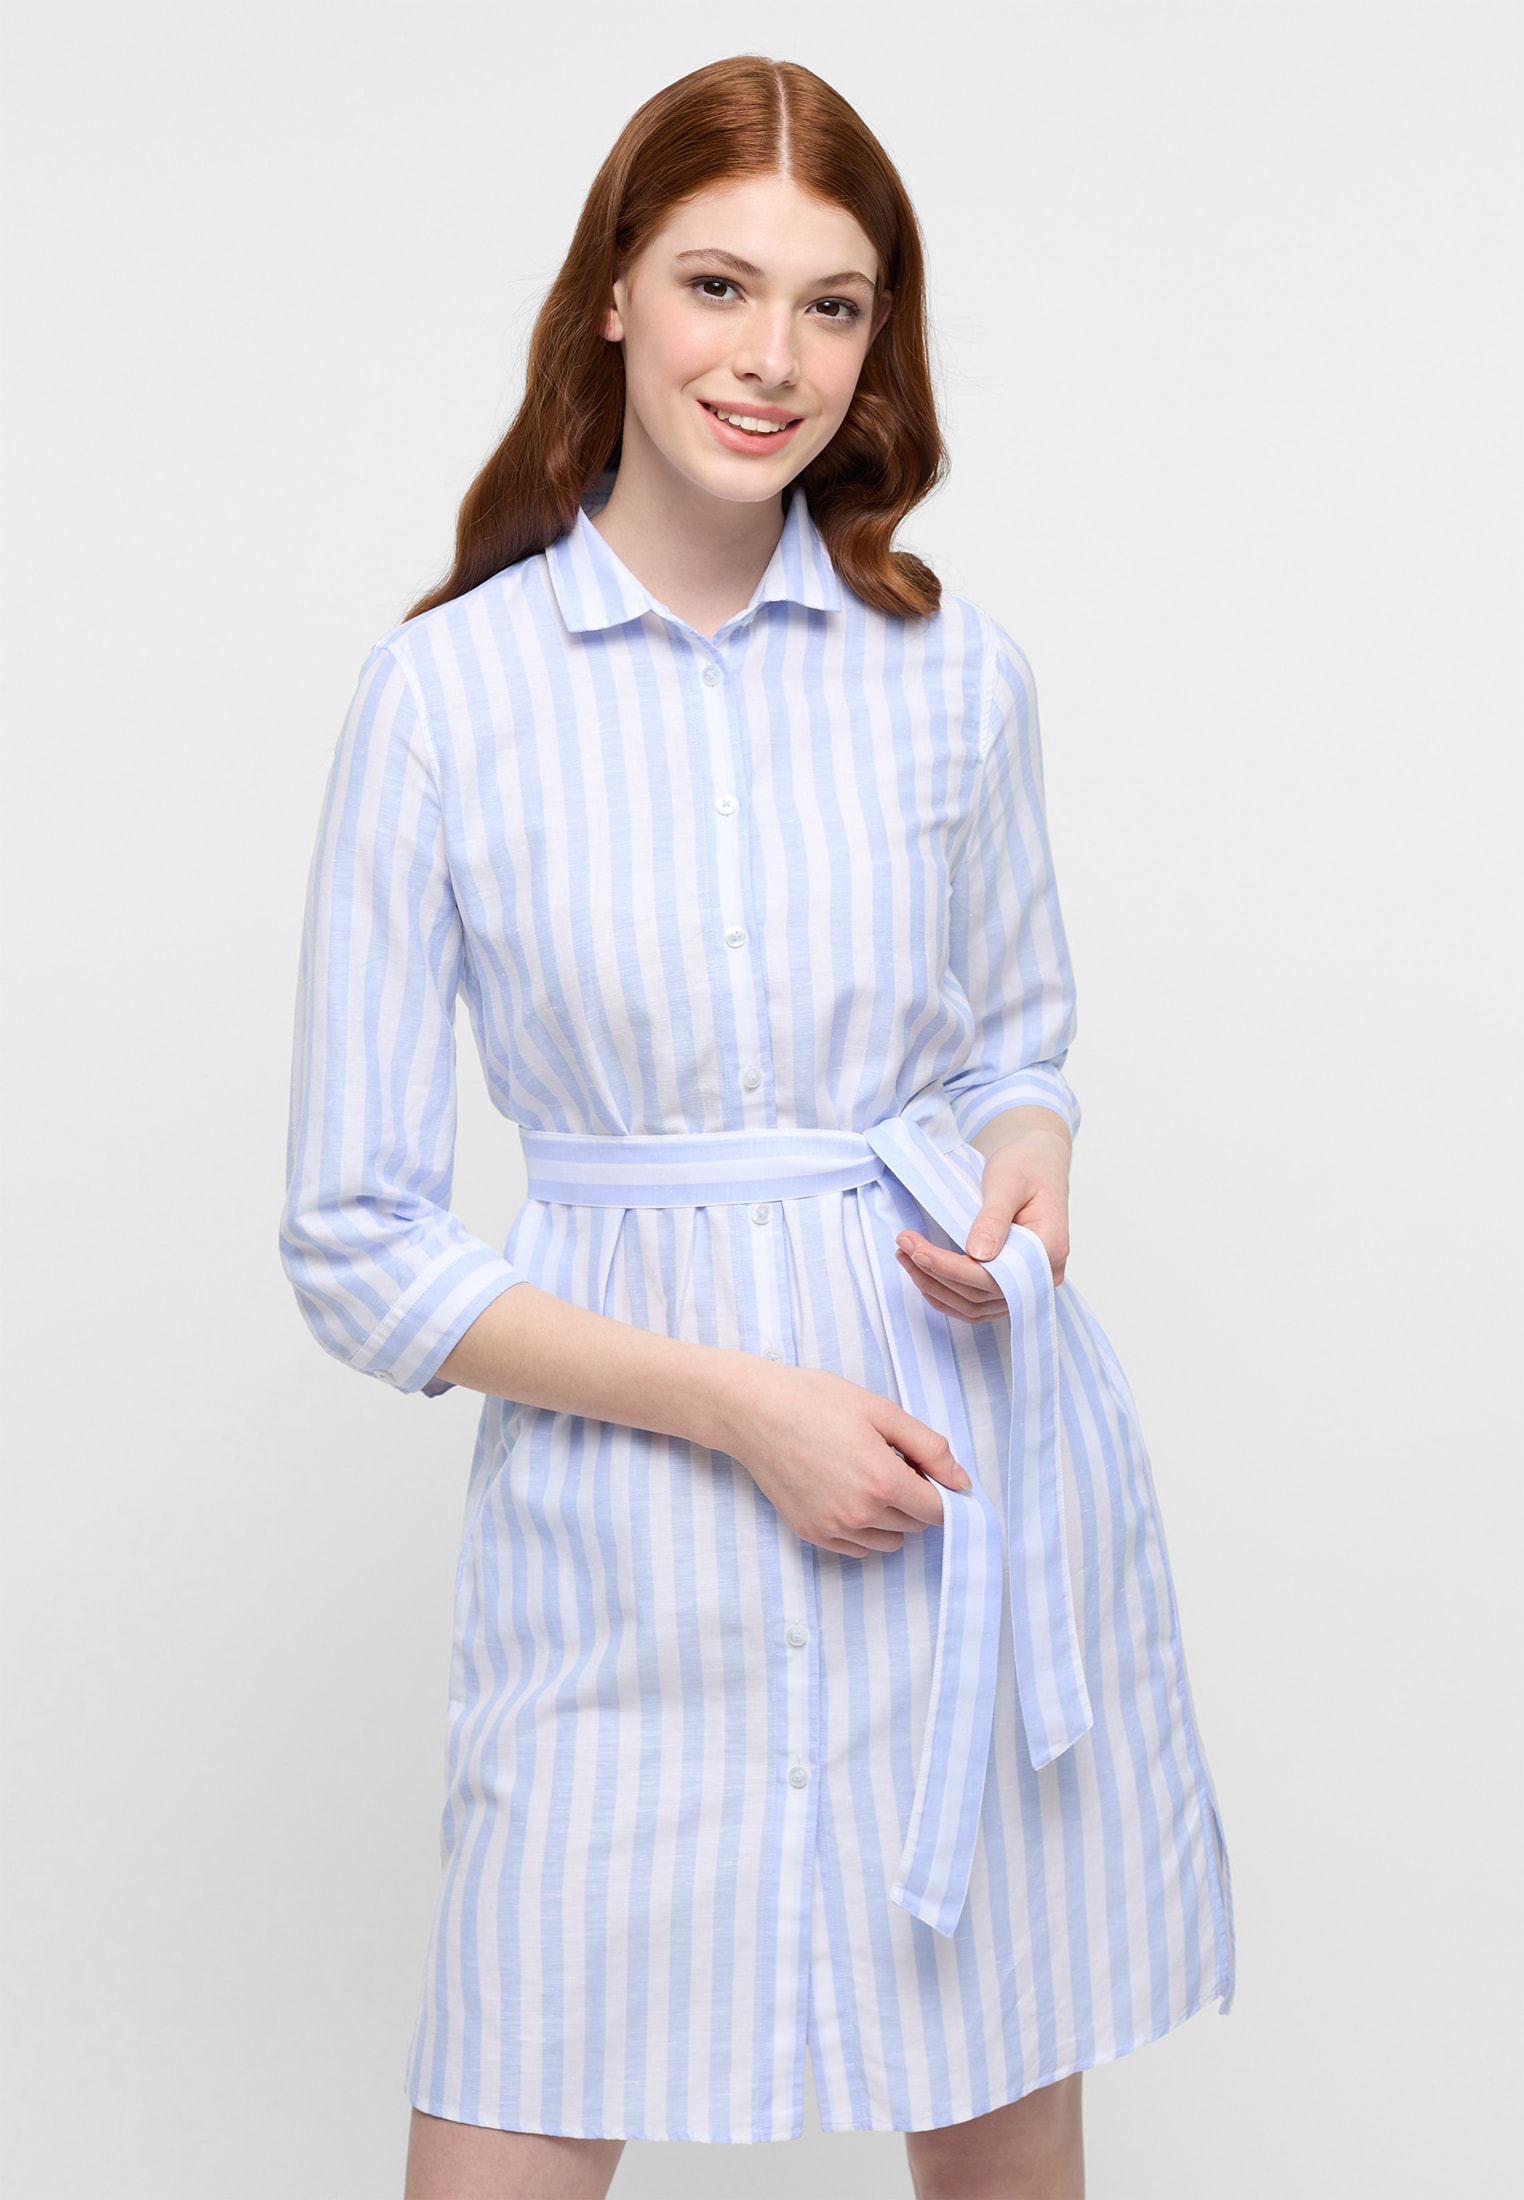 Hemdblusenkleid in light blue striped | light blue | 46 | 3/4 sleeves |  2DR00267-01-11-46-3/4